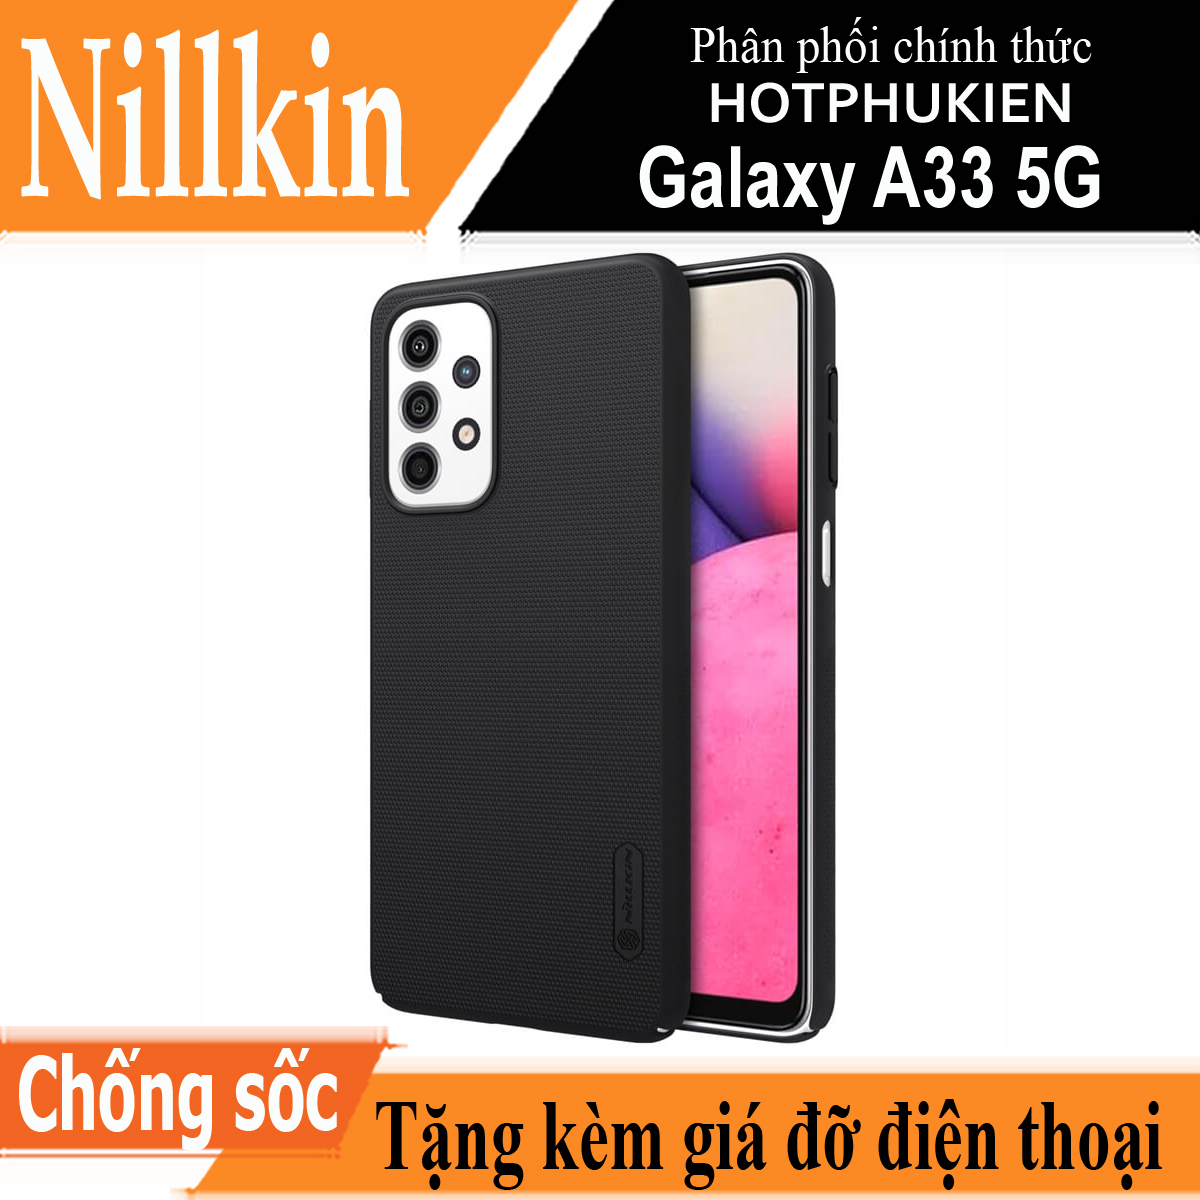 Ốp Lưng Sần chống sốc cho Samsung Galaxy A33 5G hiệu Nillkin Super Frosted Shield